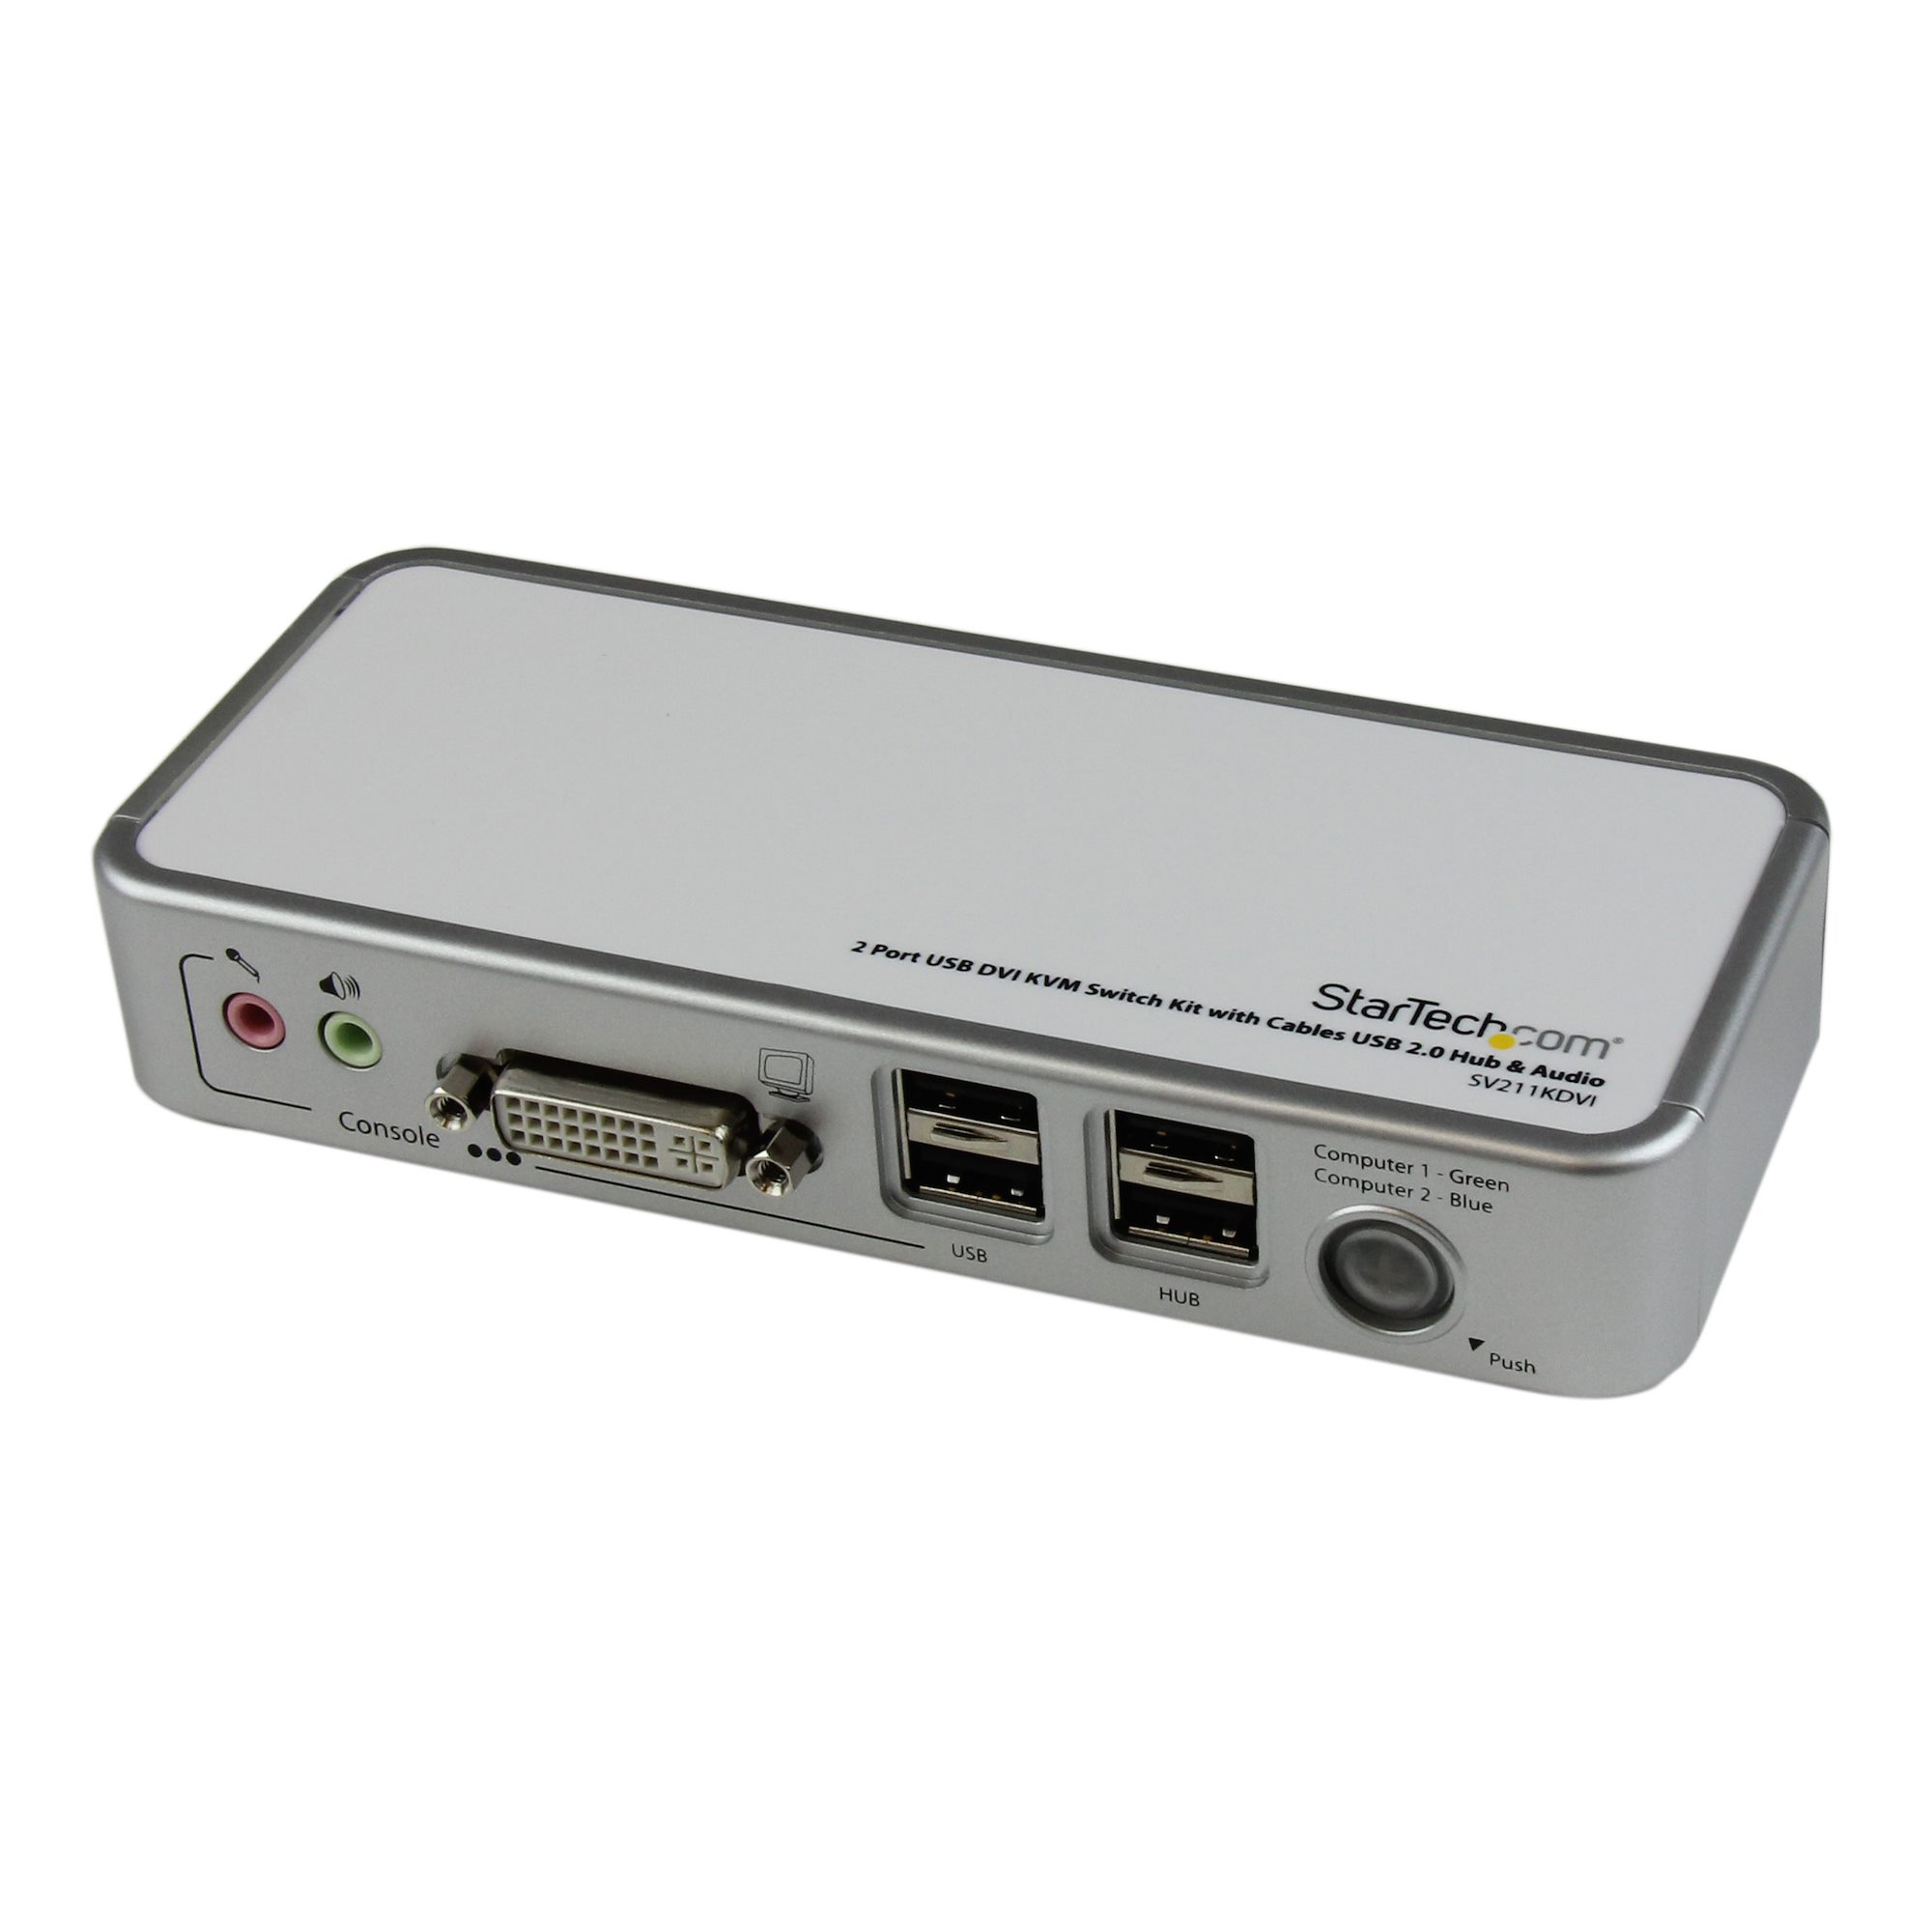 Startech.com switch commutateur kvm usb 4 ports sortie vidéo dvi, audio hub  usb 2.0 3 écrans - 4 pc - pour KVM - Serveurs & Réseau